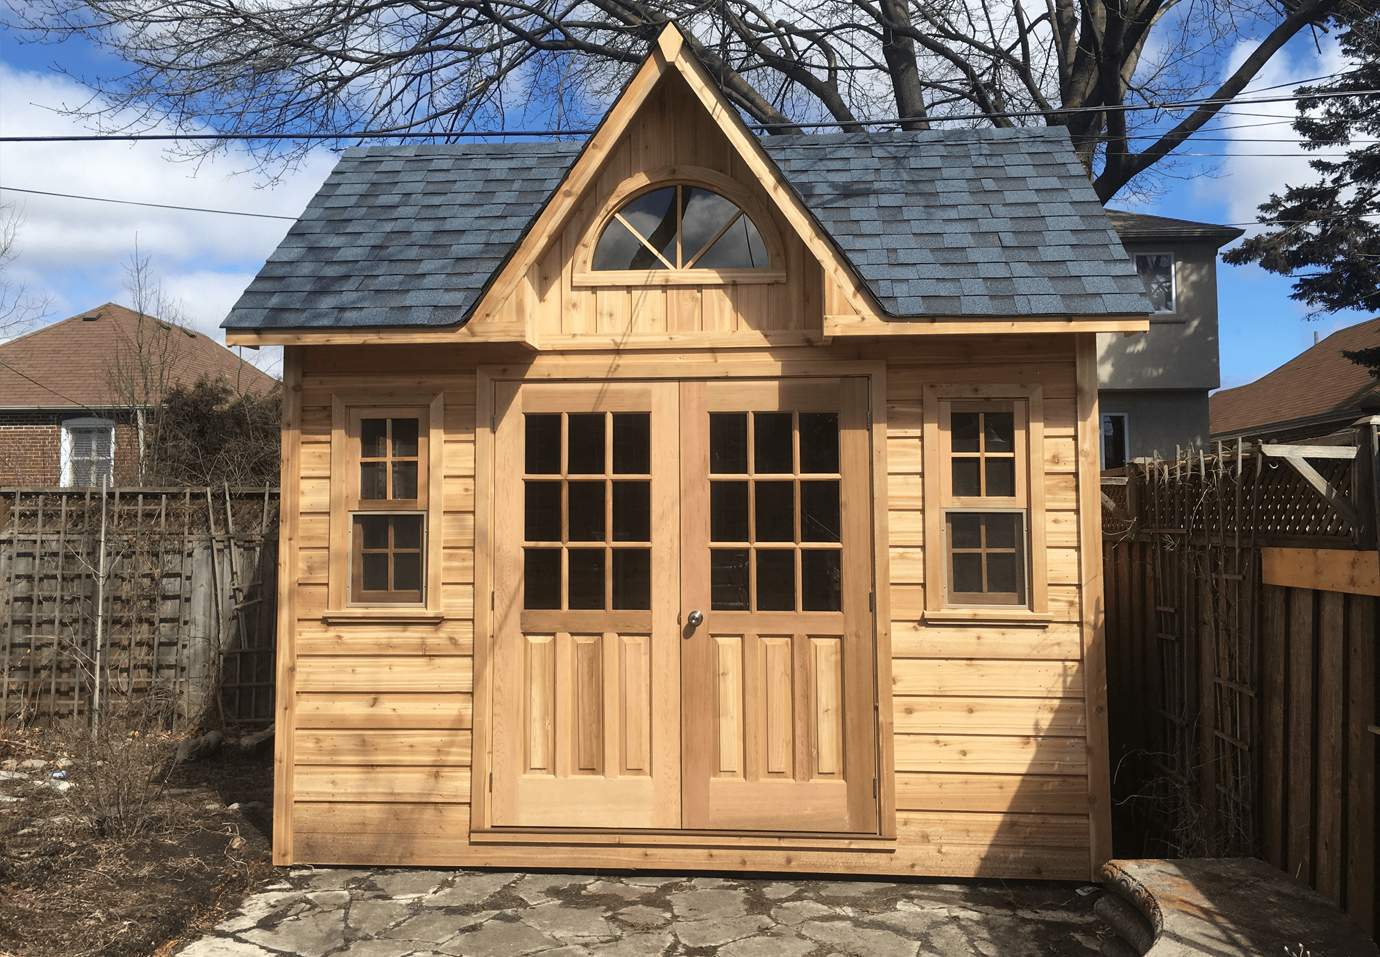 Copper creek 8x10 garden shed with double door in Toronto Ontario. ID number 217231-4